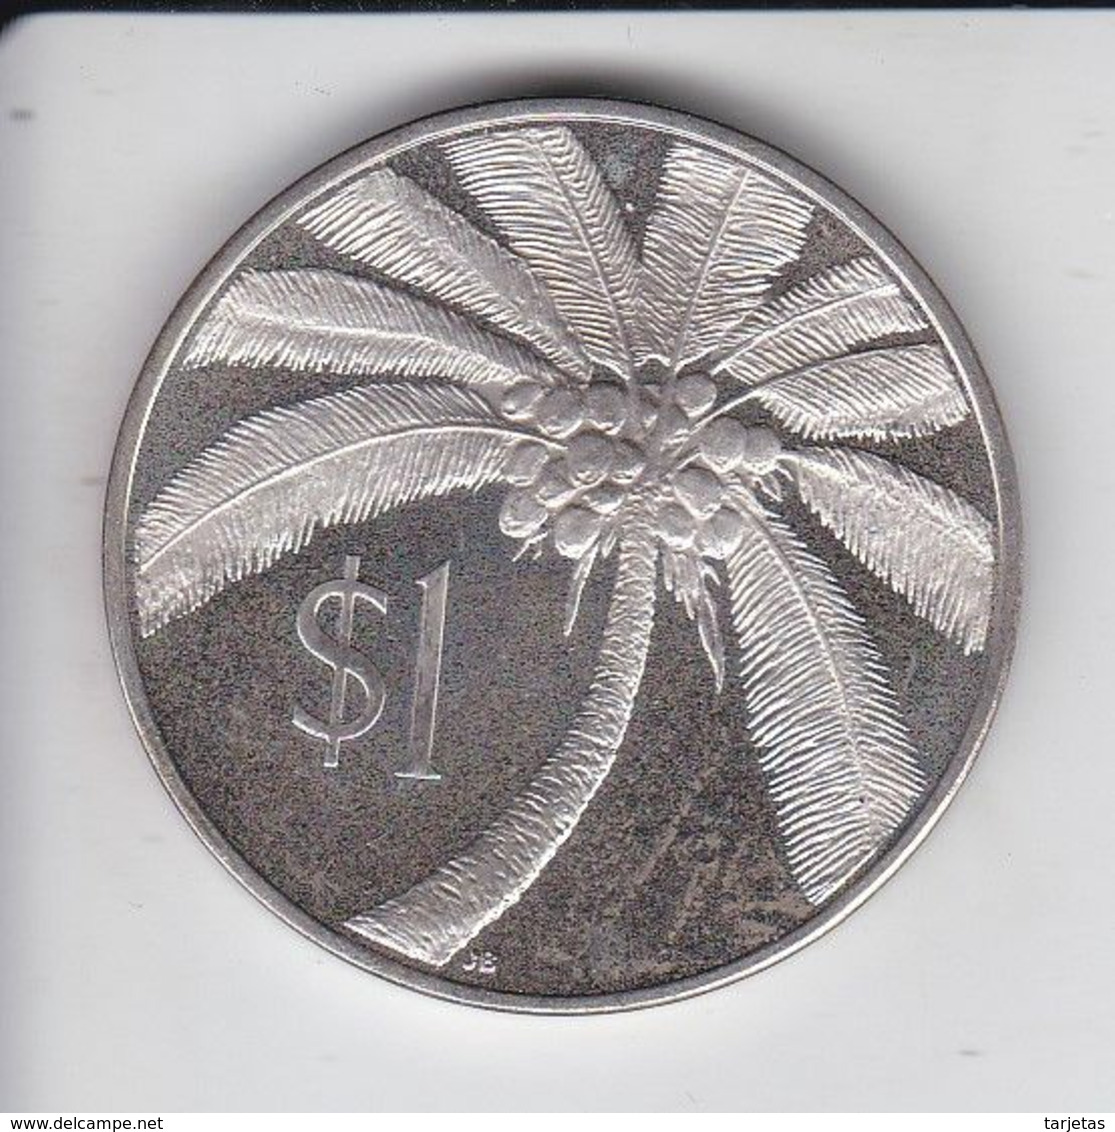 MONEDA  DE PLATA DE SAMOA DE 1 DOLLAR DEL AÑO 1974  (COIN) SILVER-ARGENT - Samoa